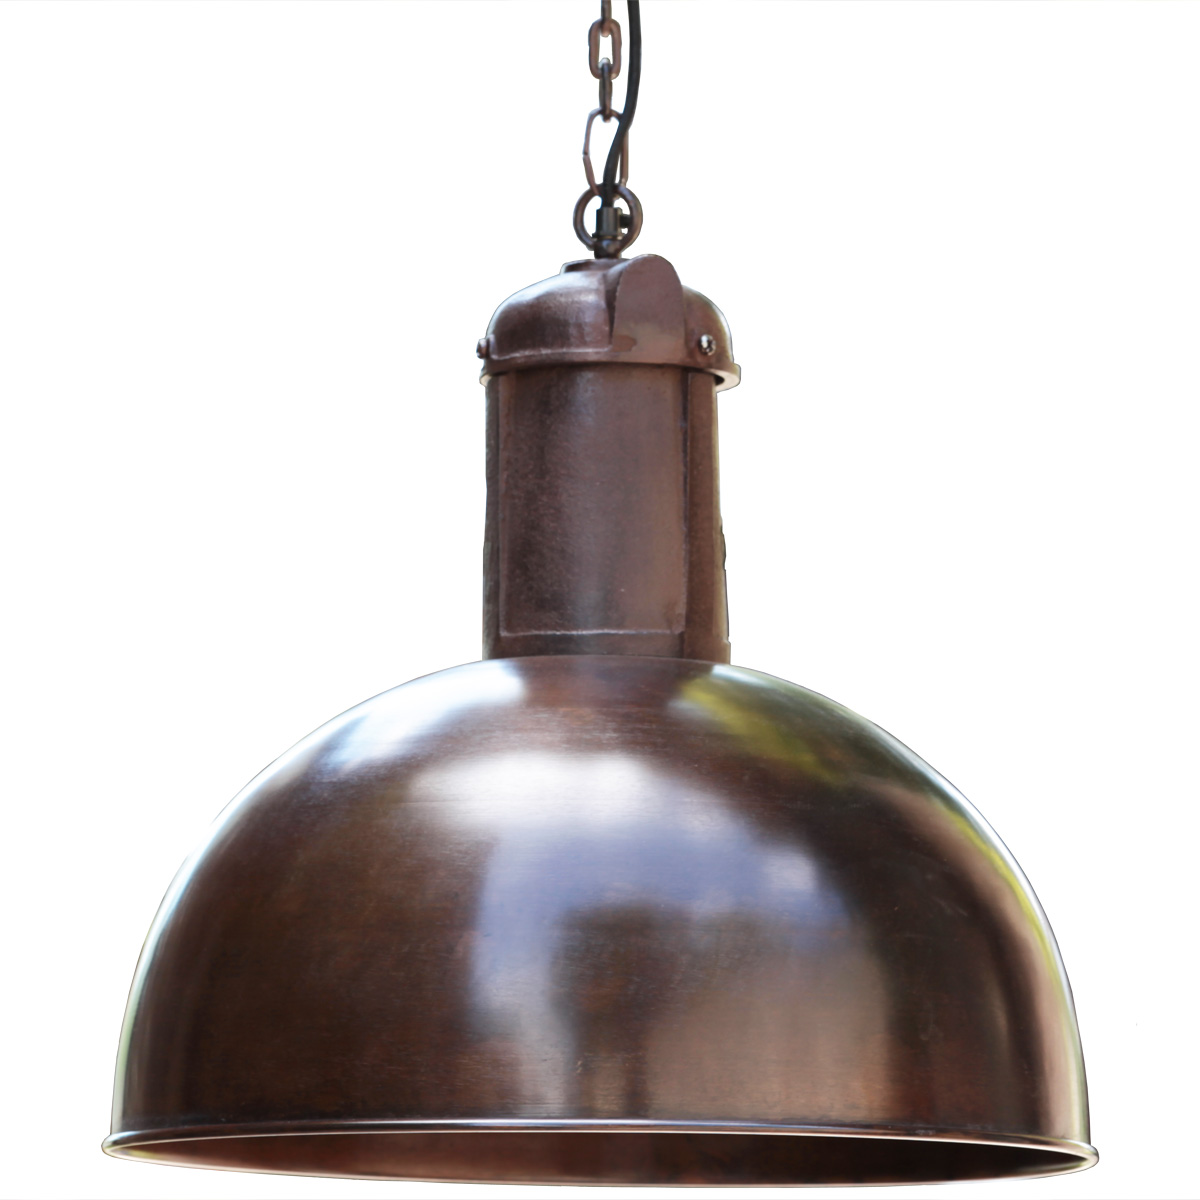 SOLAR kupferne Nostalgie-Fabriklampe an Kette: Ideal für gemütliche Esstische: Eine nostalgische Fabriklampe aus Kupferblech  (großes Modell)